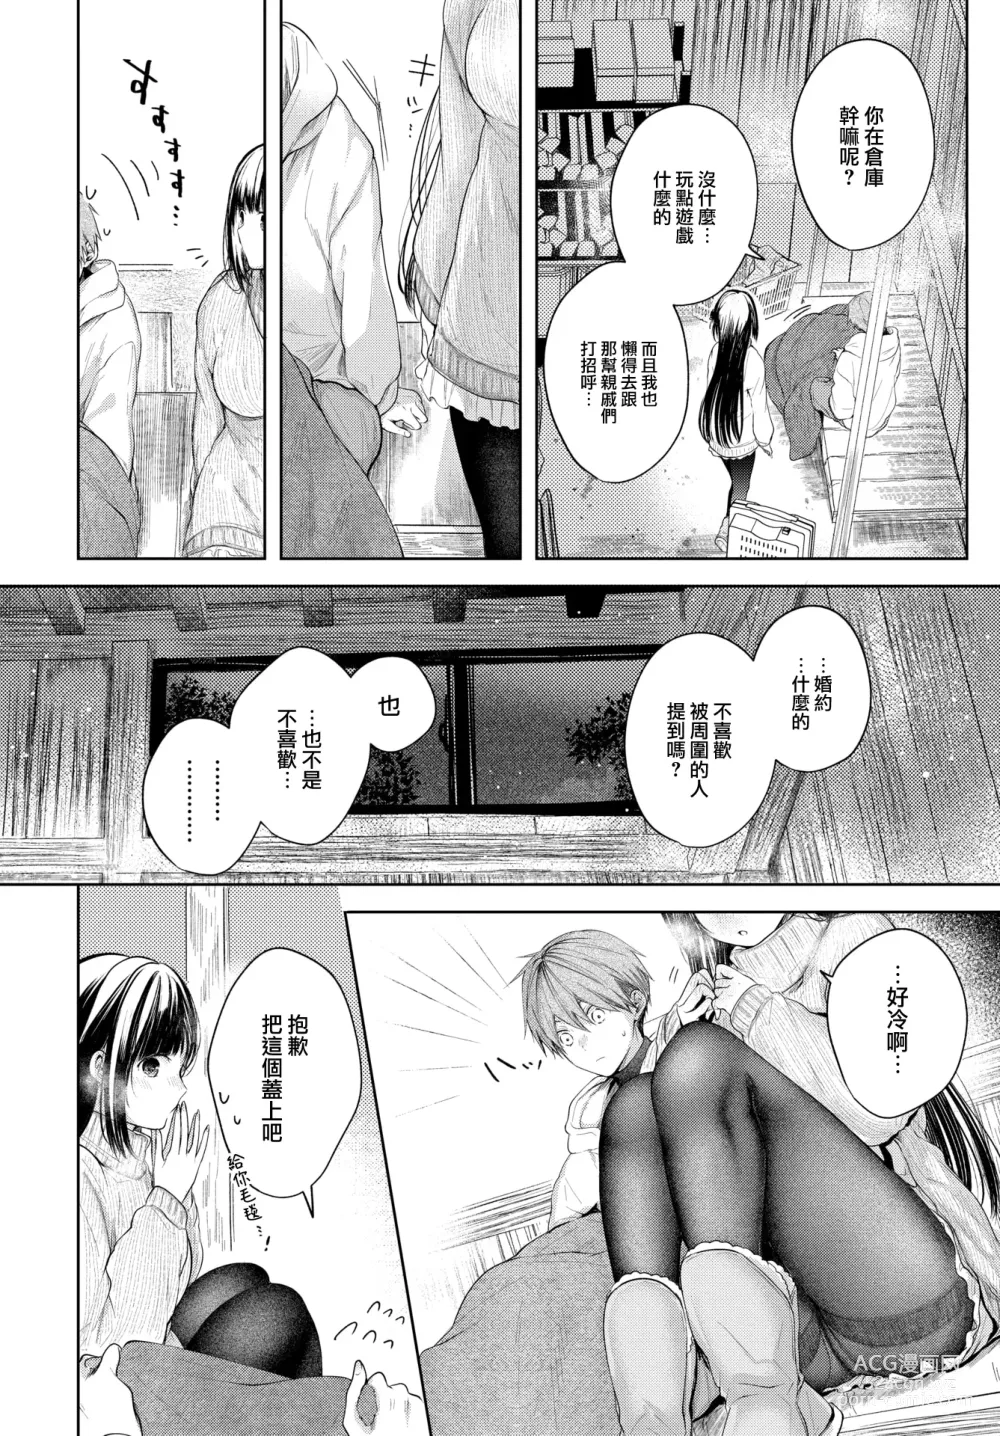 Page 7 of manga Ii mo Amai mo Kimi to Dake.